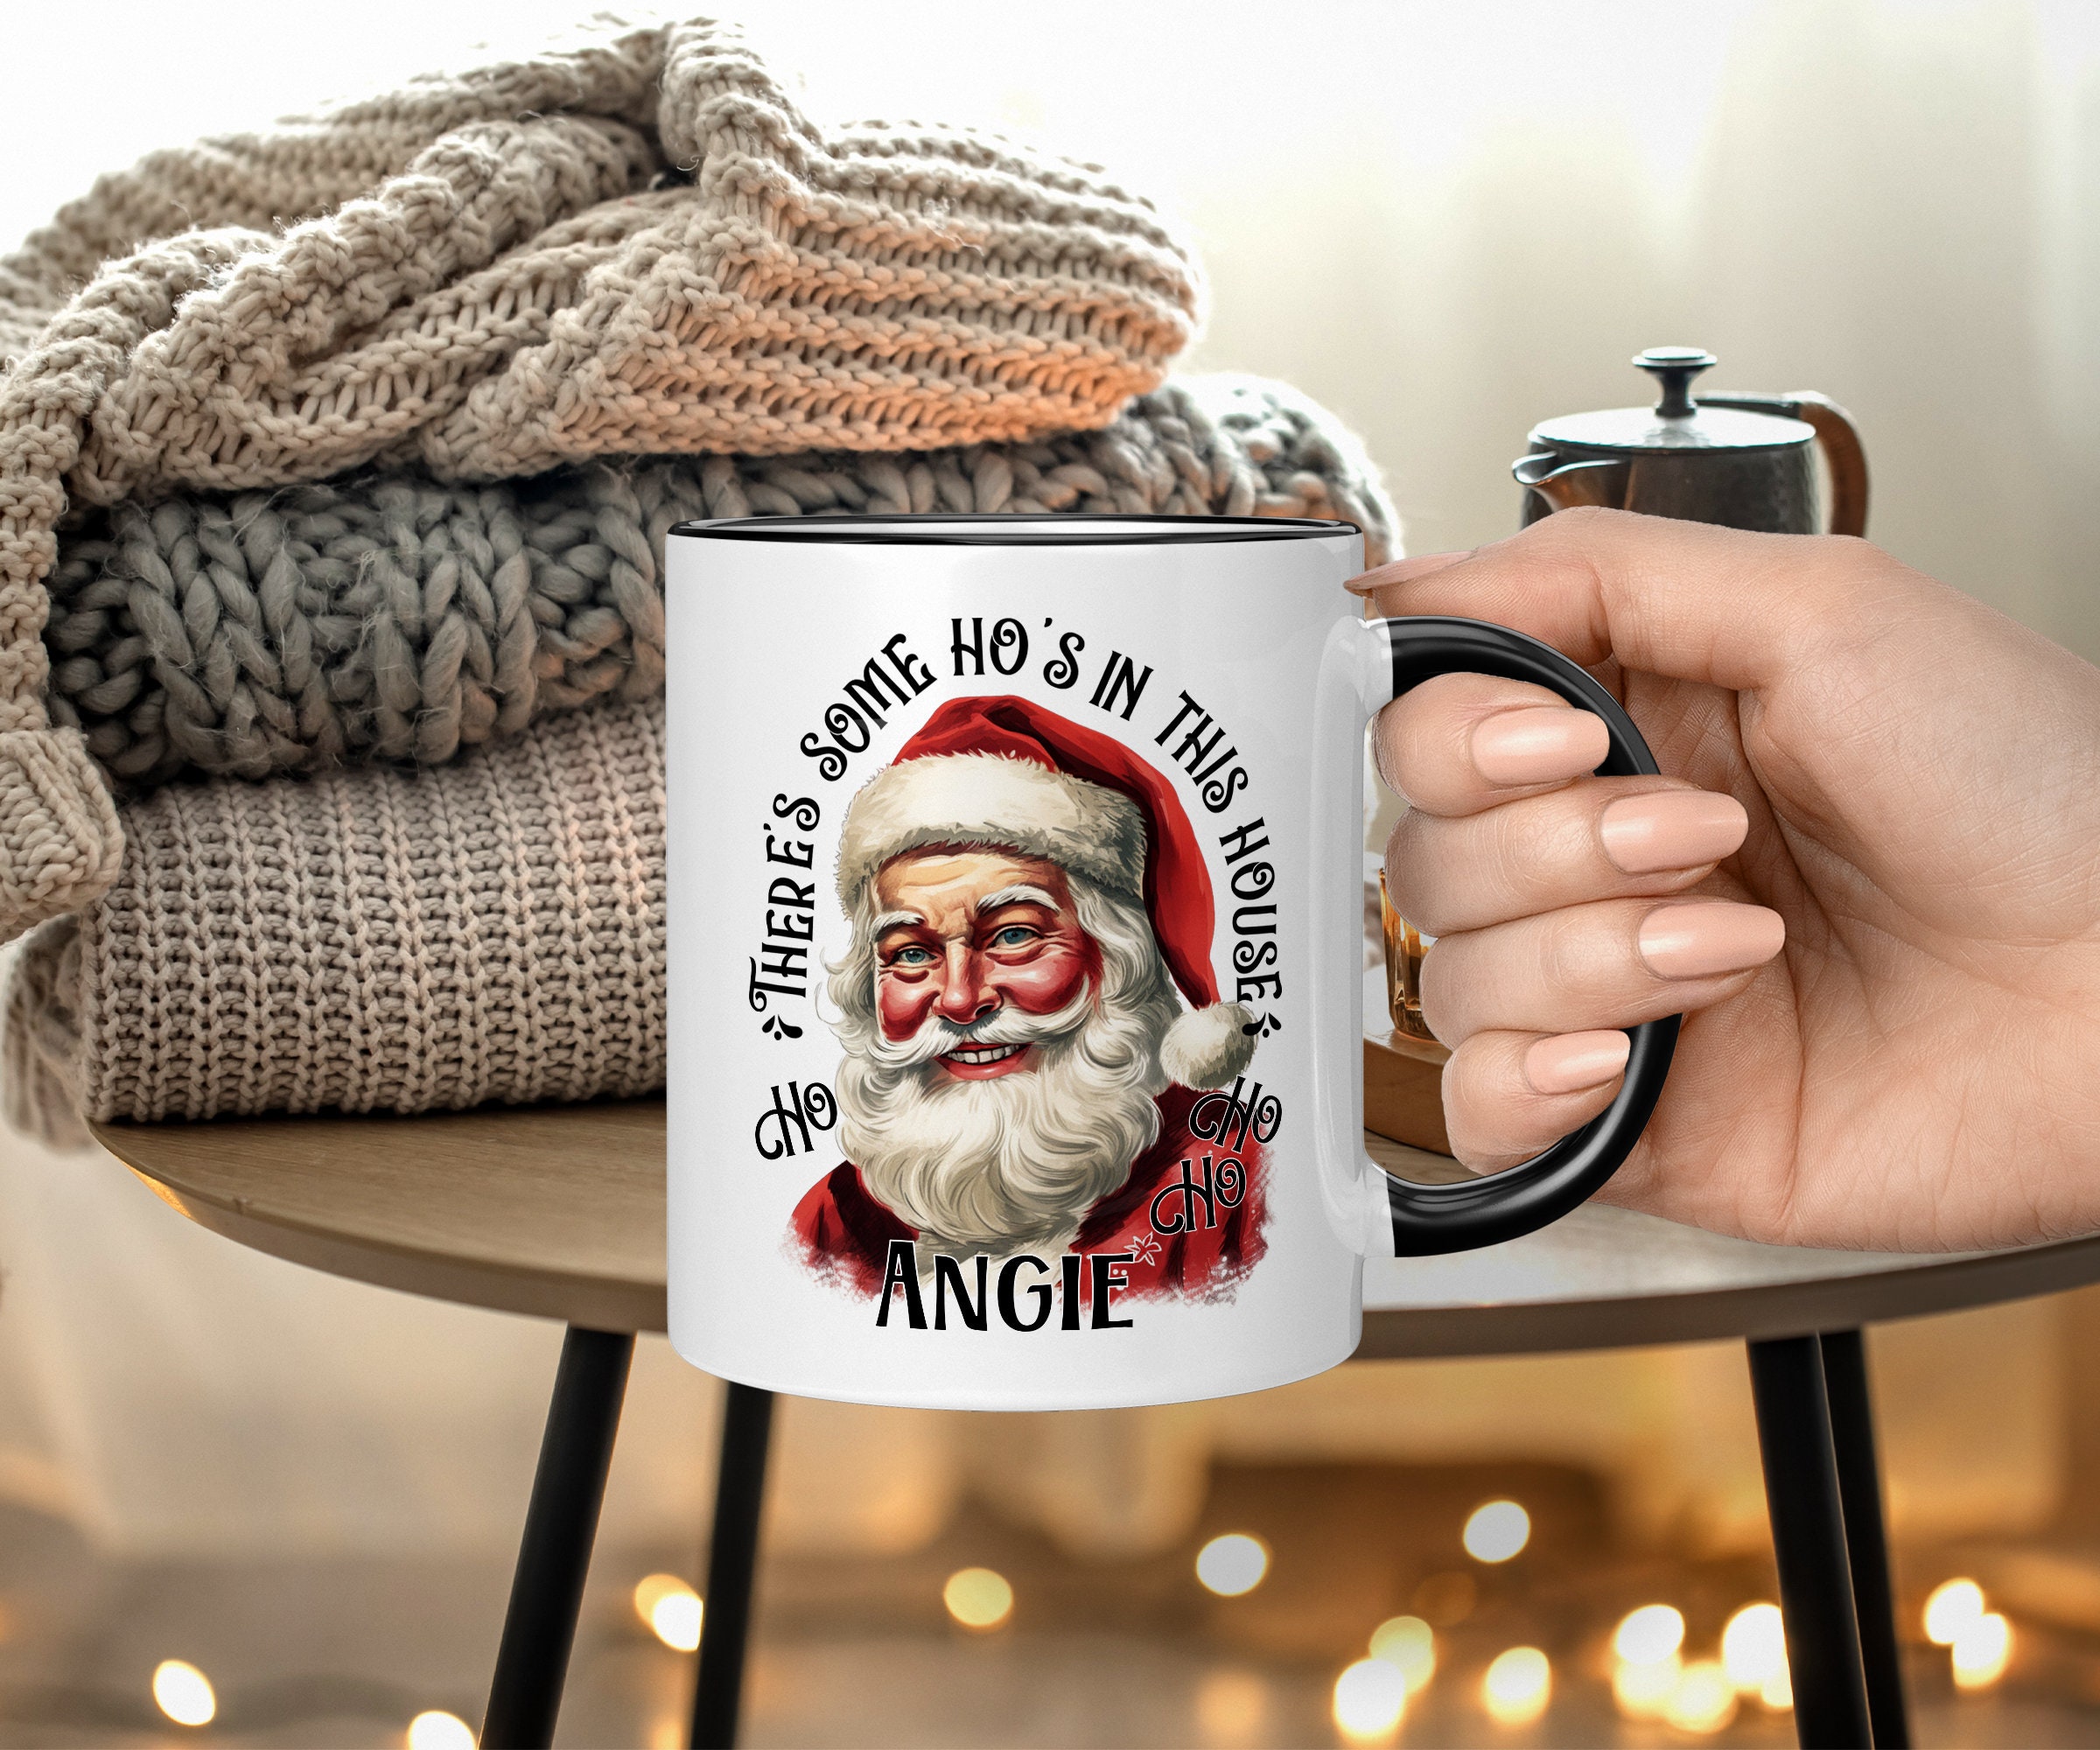 Santa Claus Blue Coffee Mug Christmas Bag Of Gifts Gibson